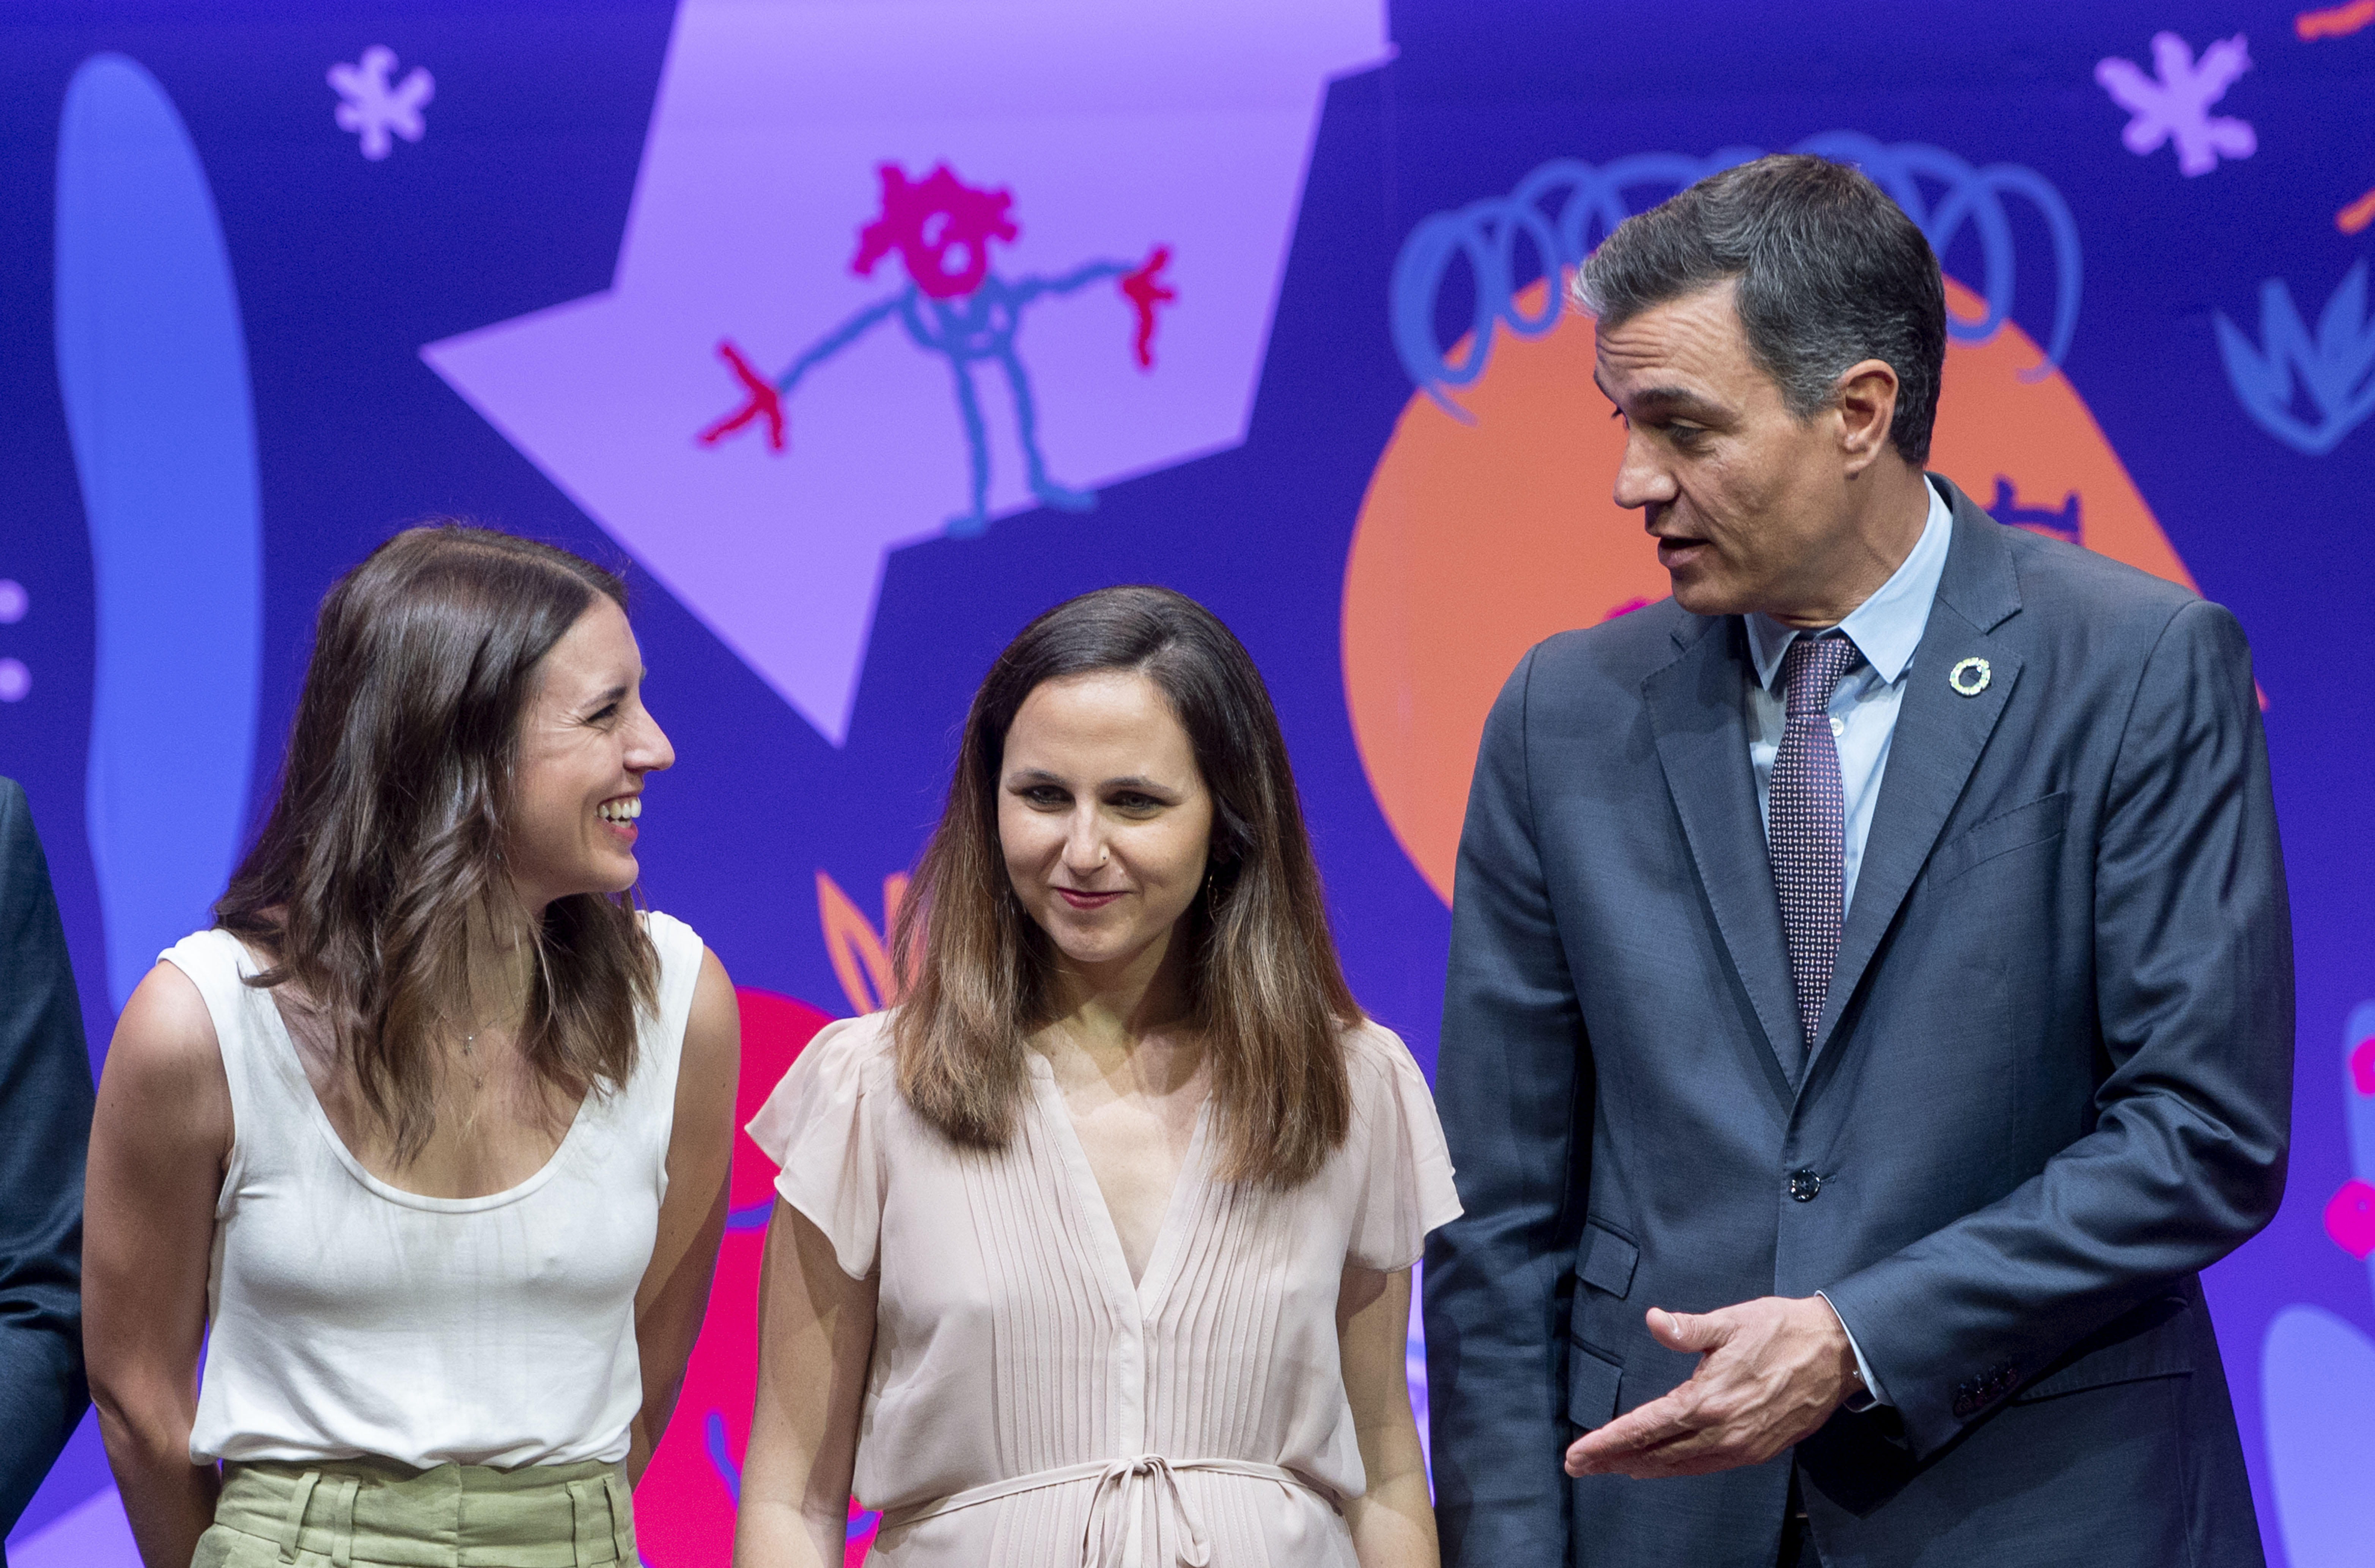 La ministra de Igualdad, Irene Montero con la líder de Podemos y ministra de Derechos Sociales y Agenda 2030, Ione Belarra, junto al presidente del Gobierno, Pedro Sánchez, en un acto sobre los derechos de la Infancia en Madrid en febrero pasado.